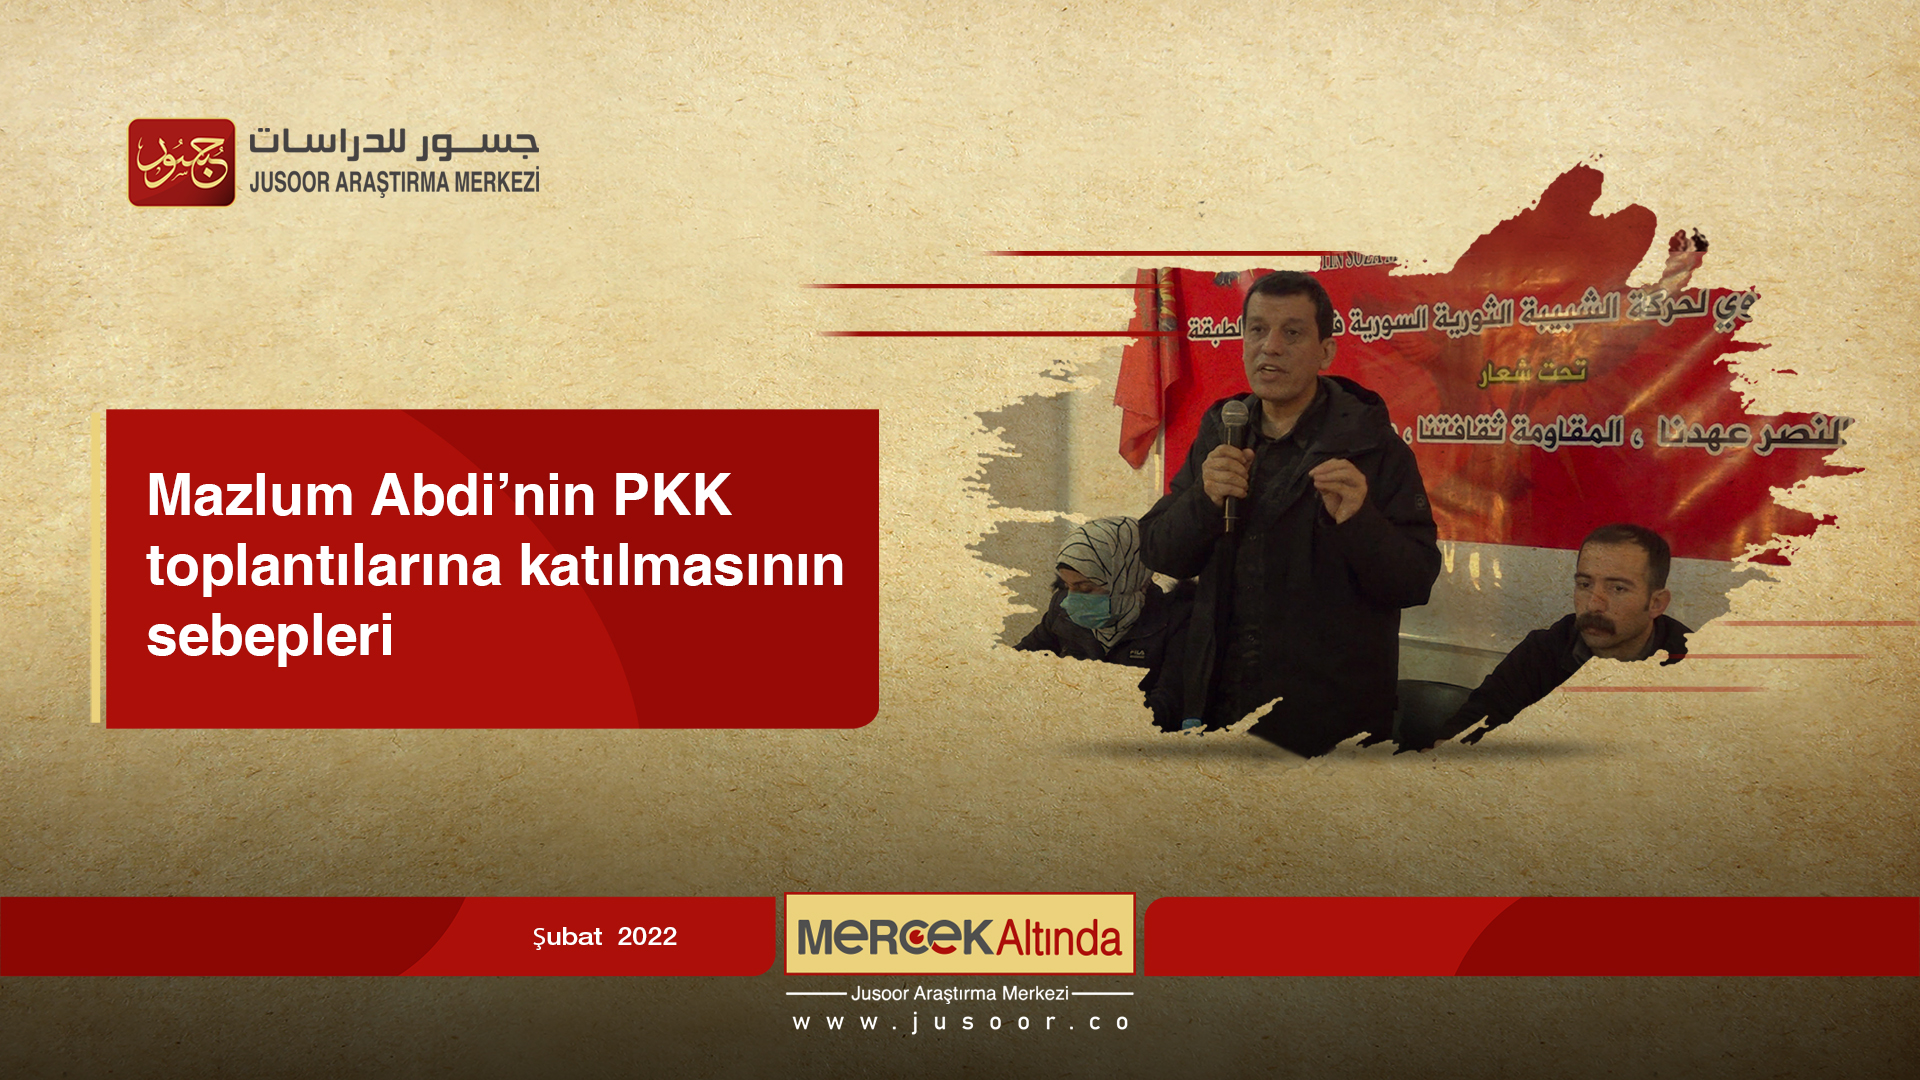 Mazlum Abdi’nin PKK toplantılarına katılmasının sebepleri